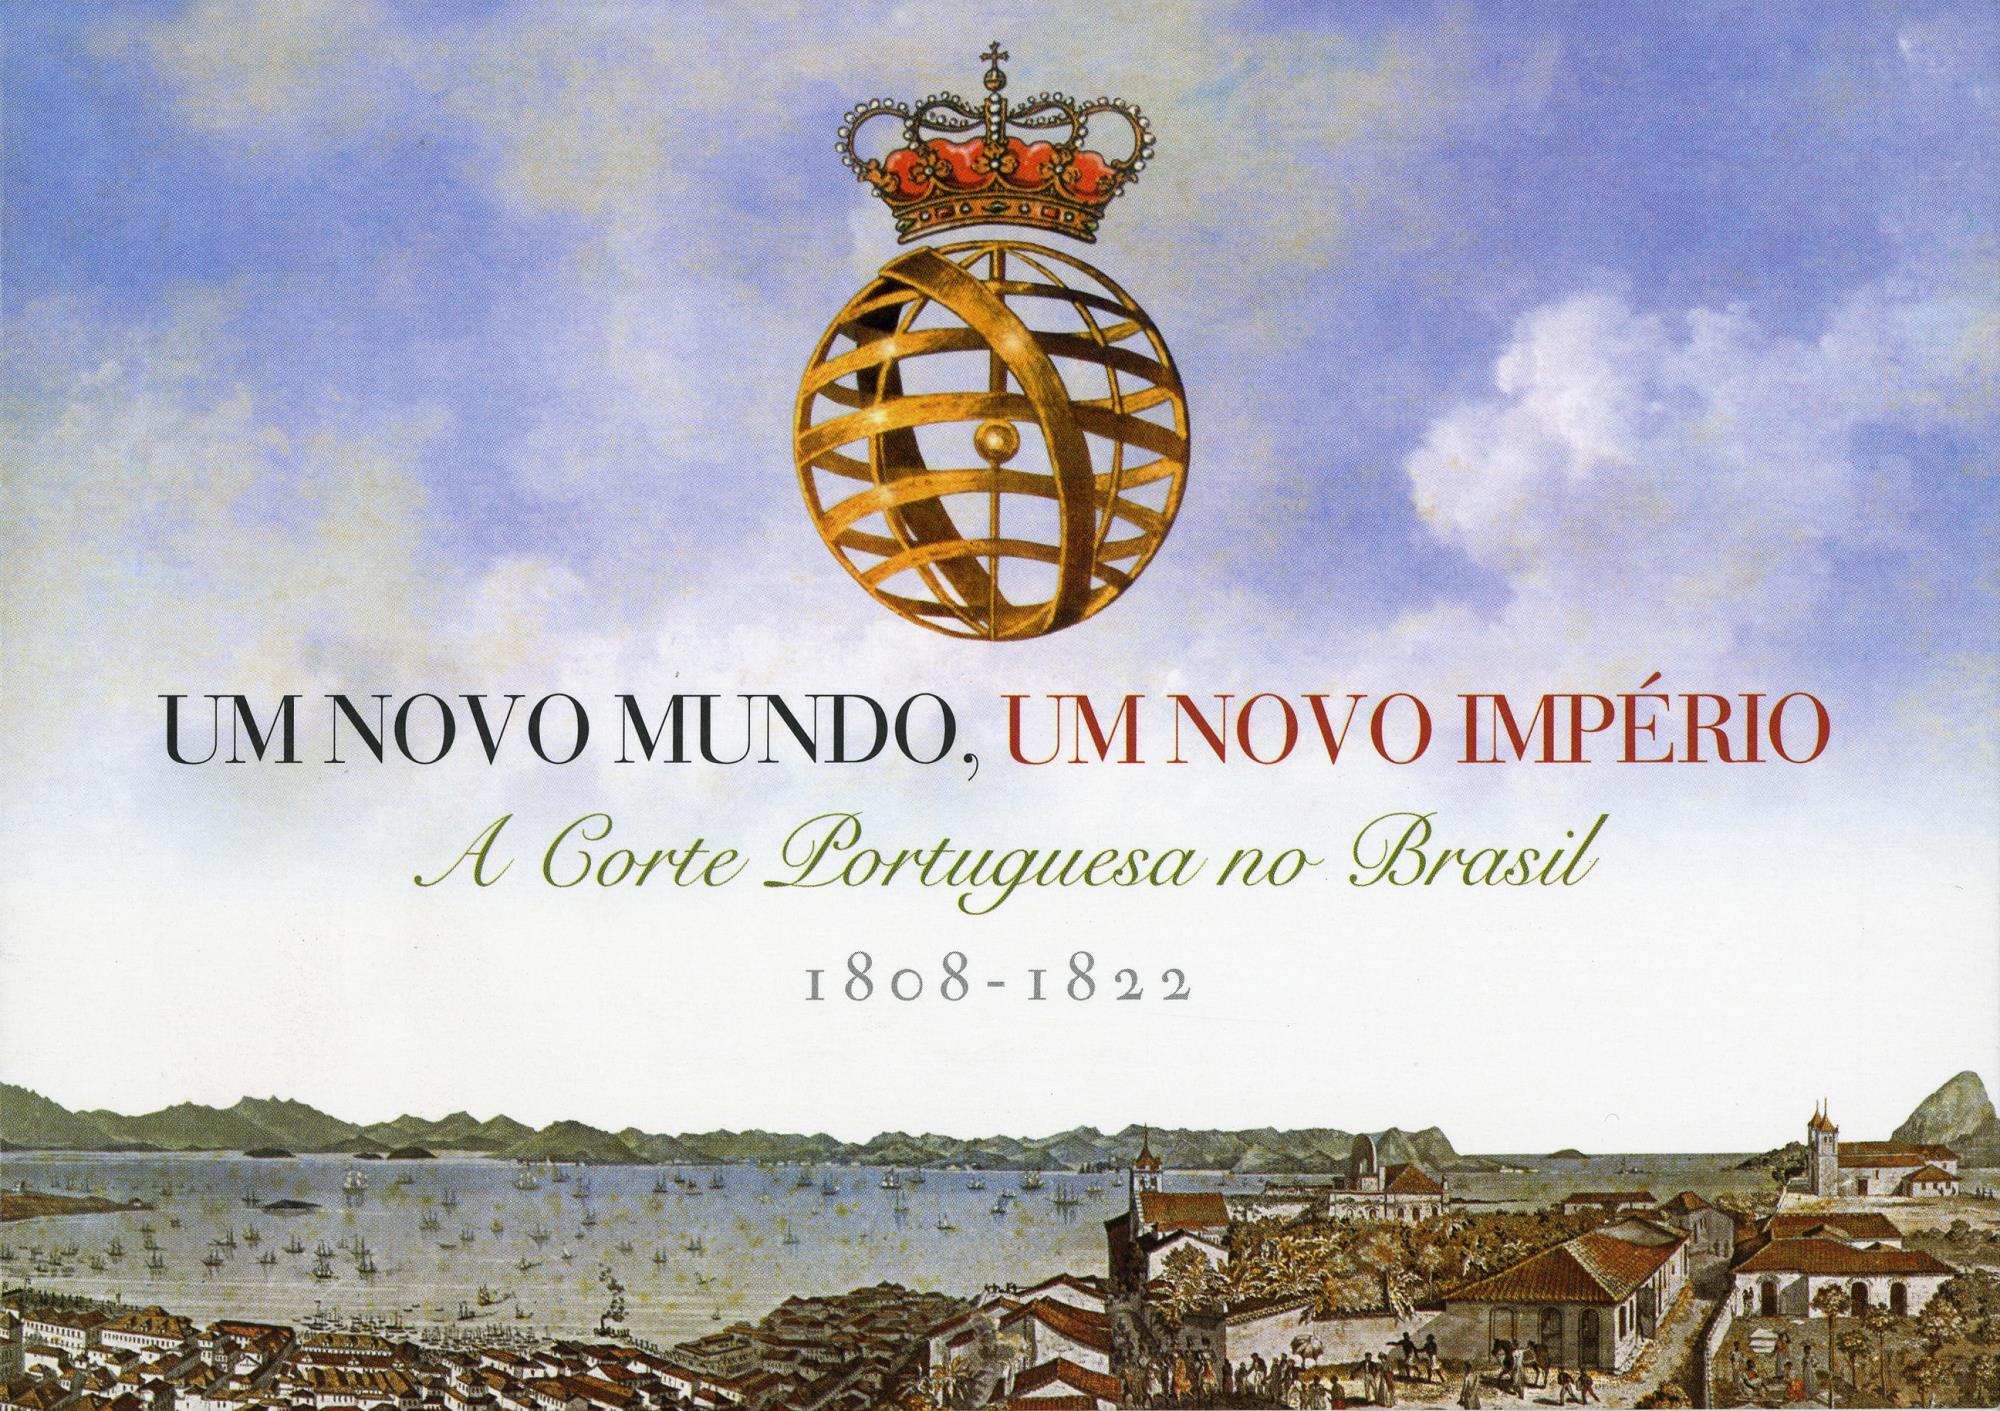 Um Novo Mundo, um Novo Império. A Corte Portuguesa no Brasil, 1808 – 1822 [exposição e conferência]